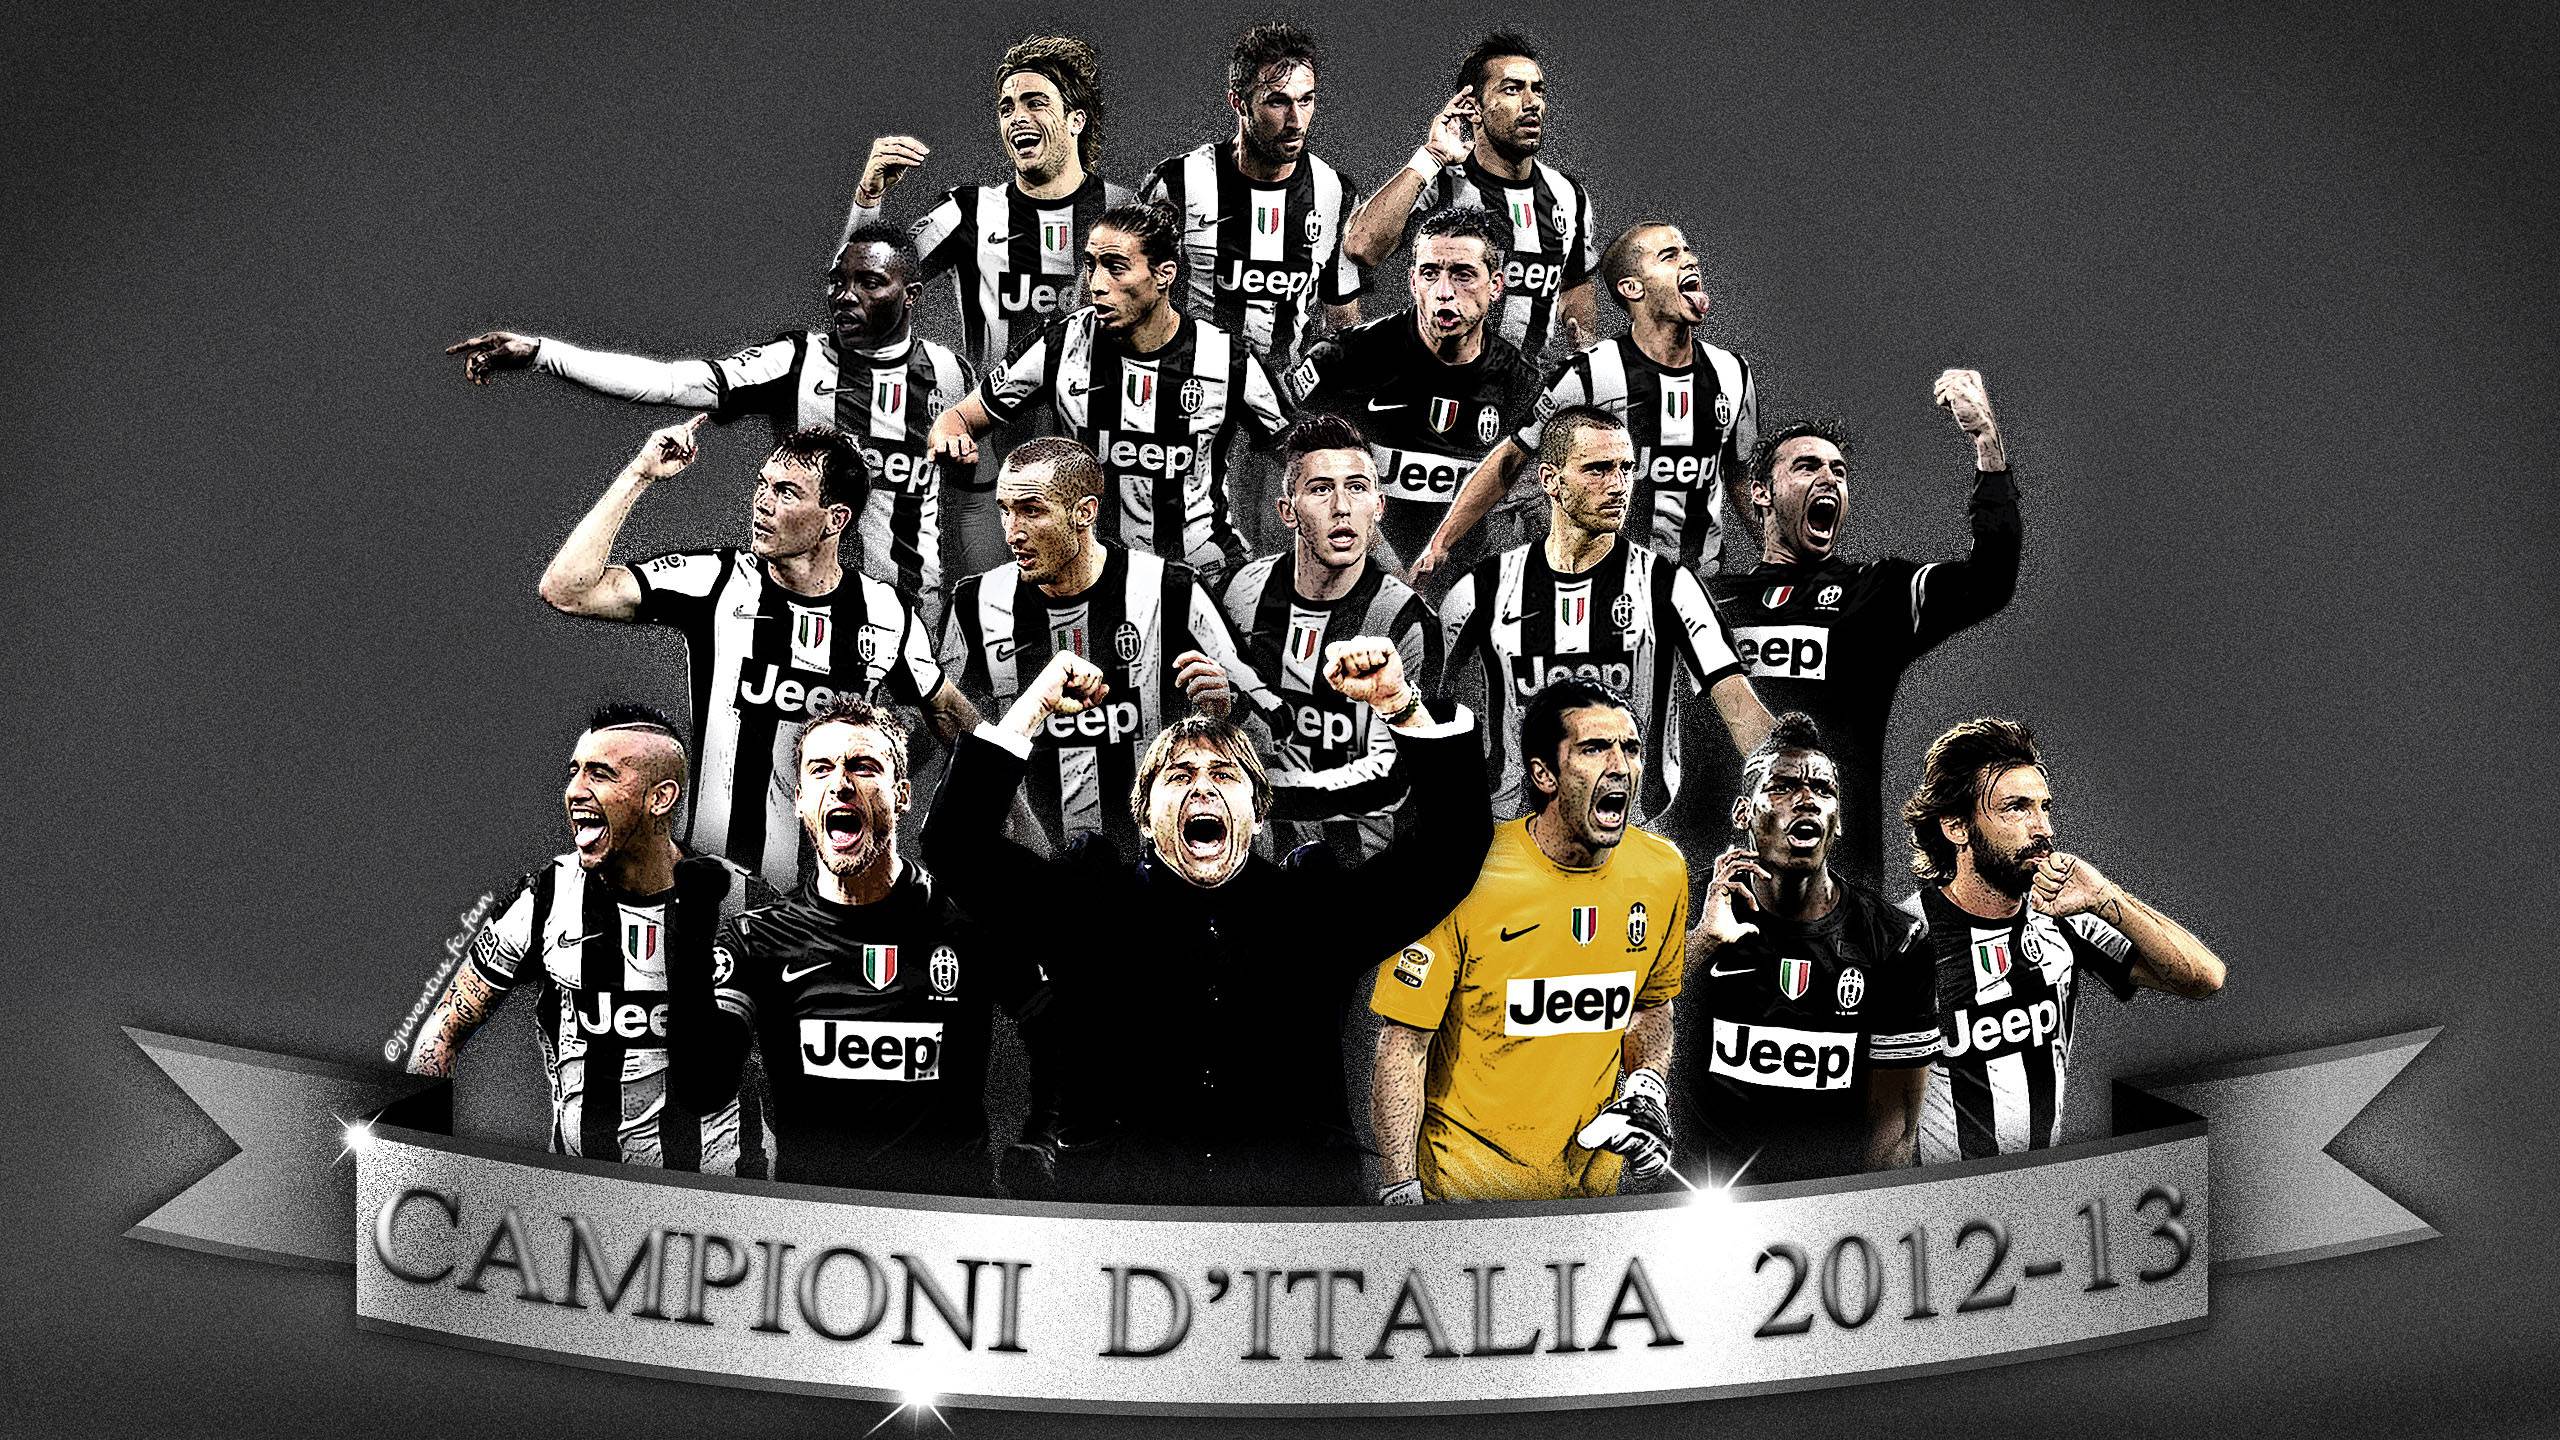 Juventus FC Team wallpaper